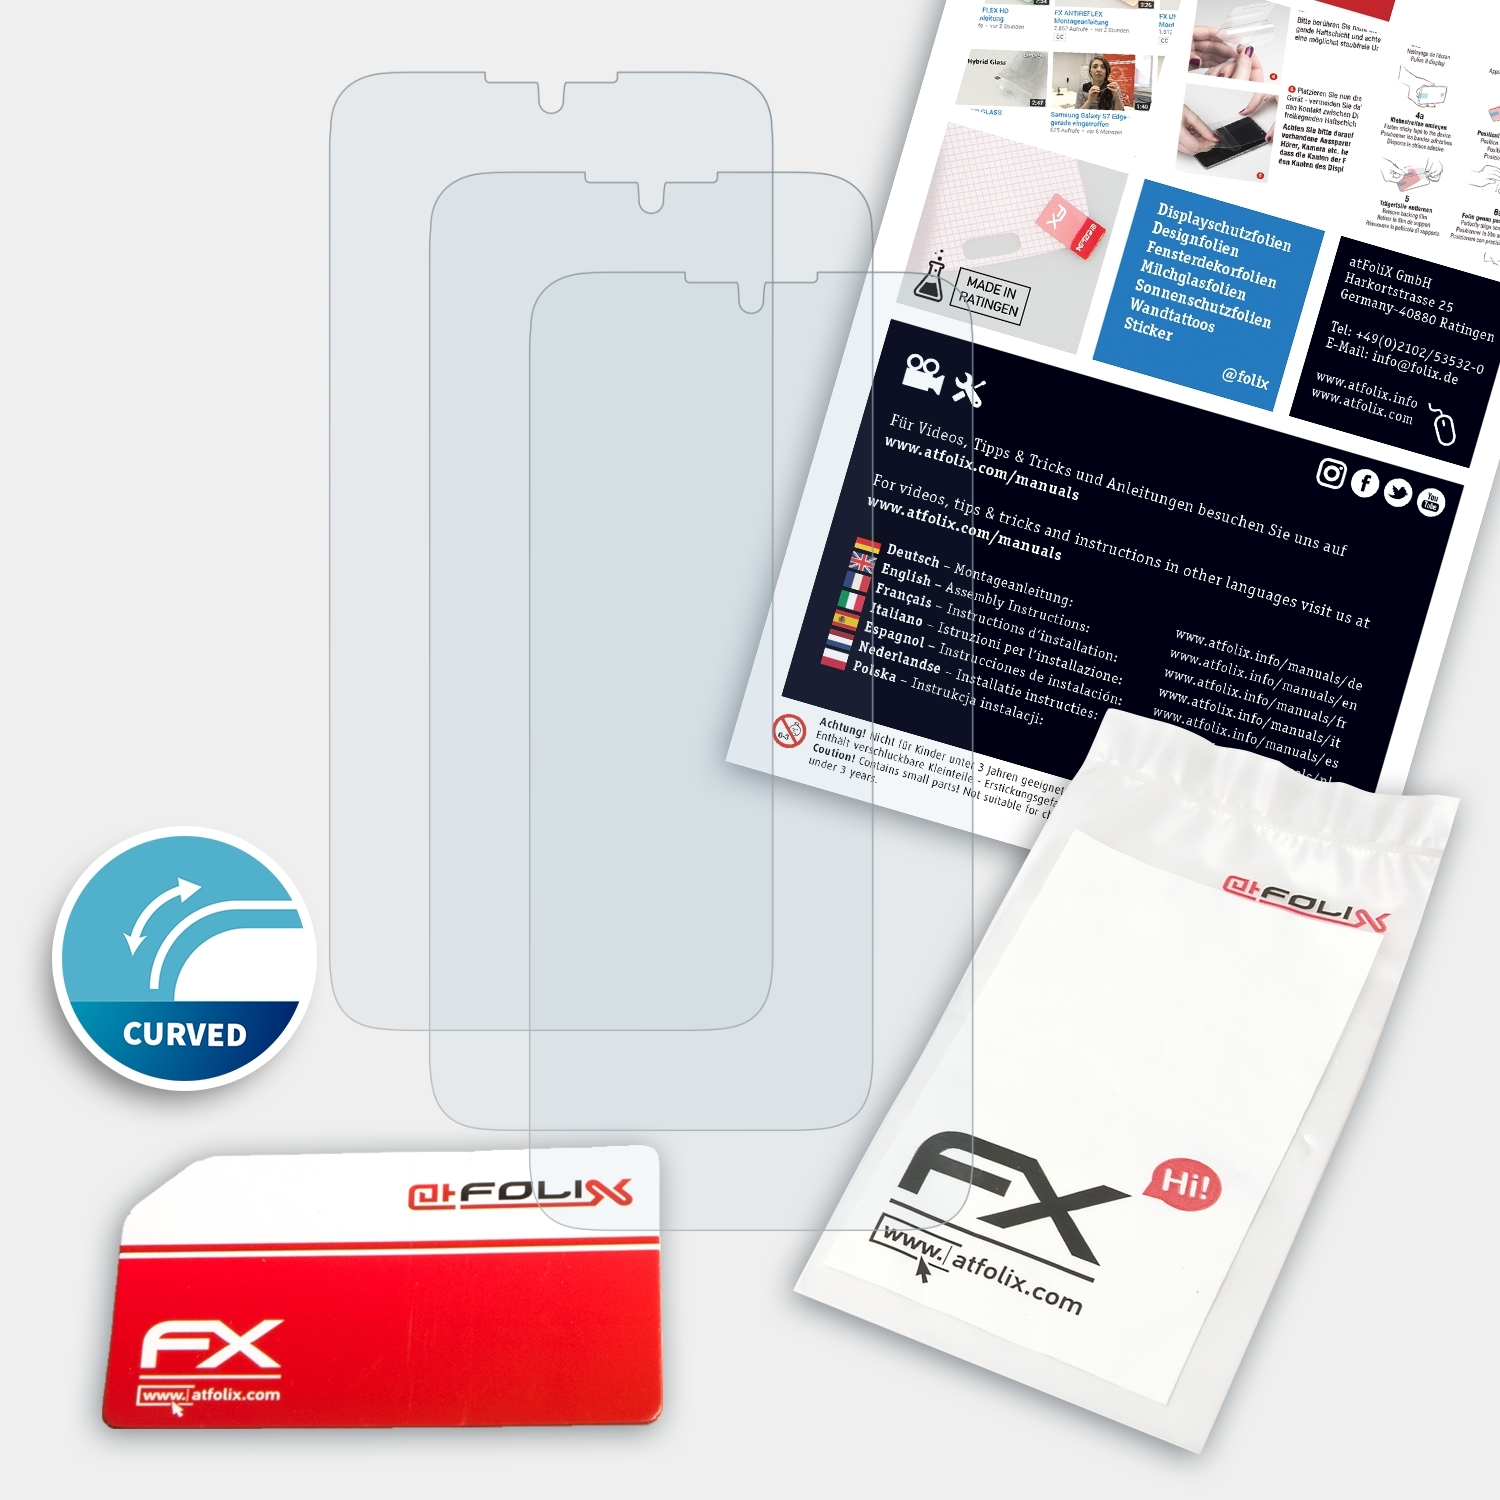 ATFOLIX Zoom) FX-ActiFleX 3x Motorola Displayschutz(für One